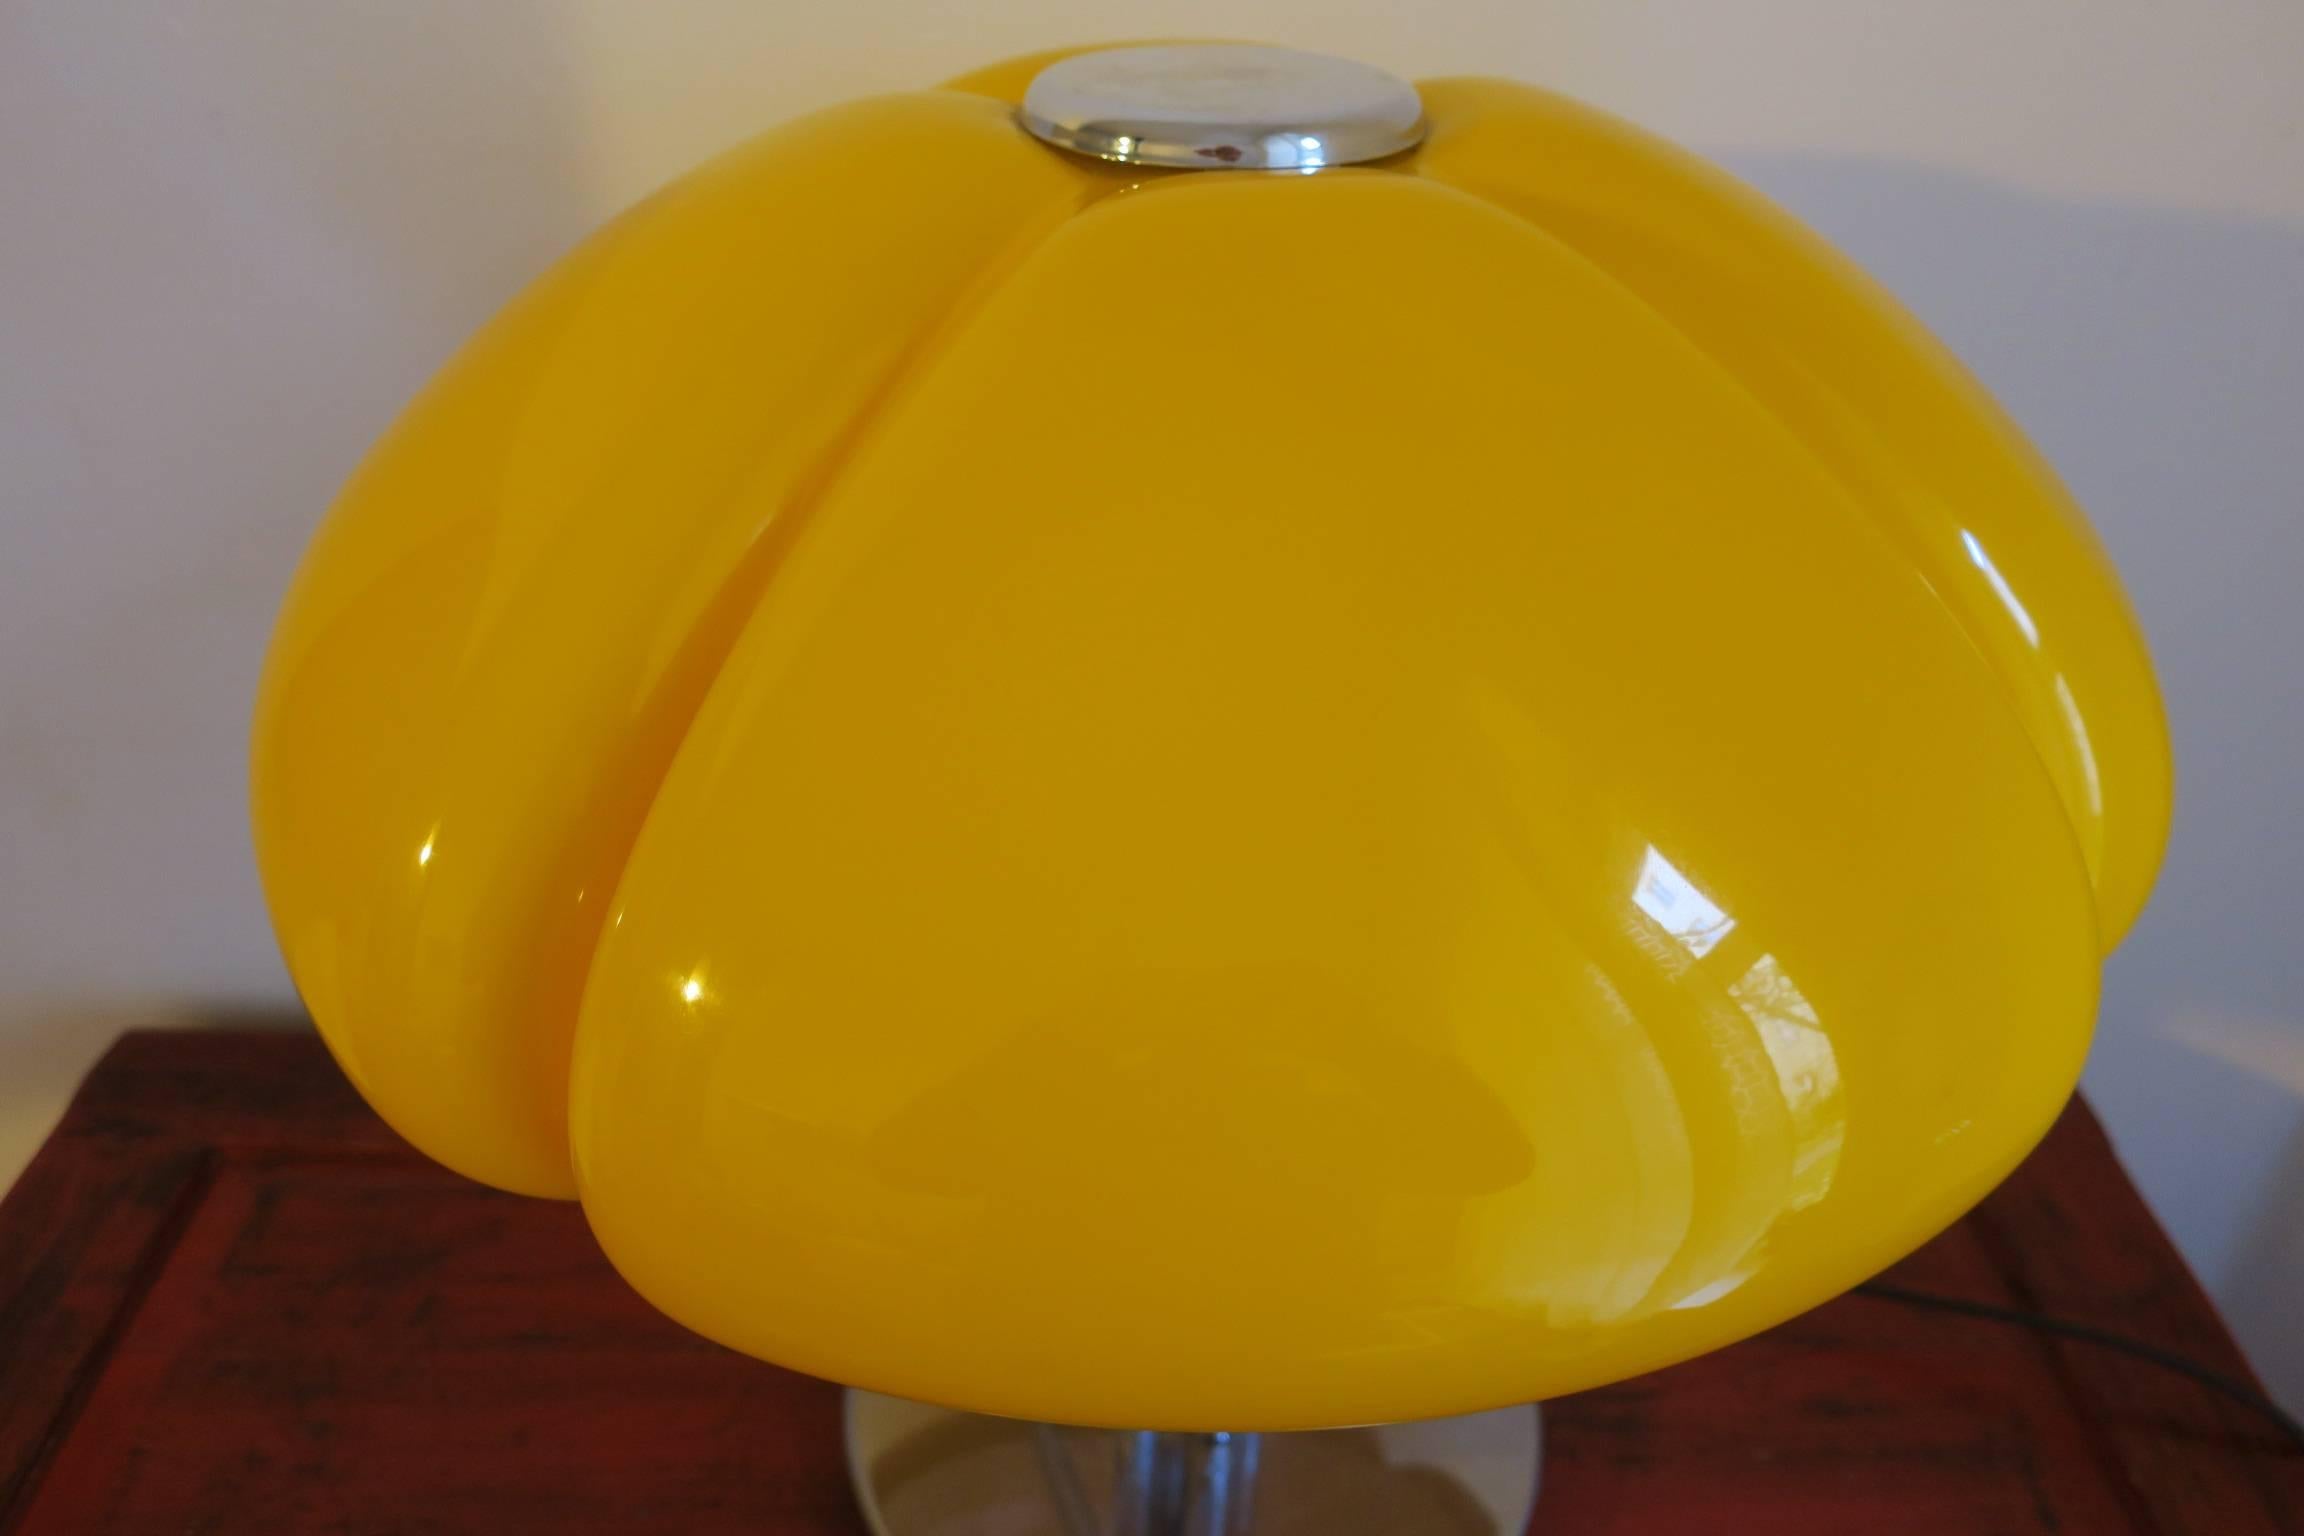 Gae Aulenti Quadrifoglio table lamp in rare canary yellow color.